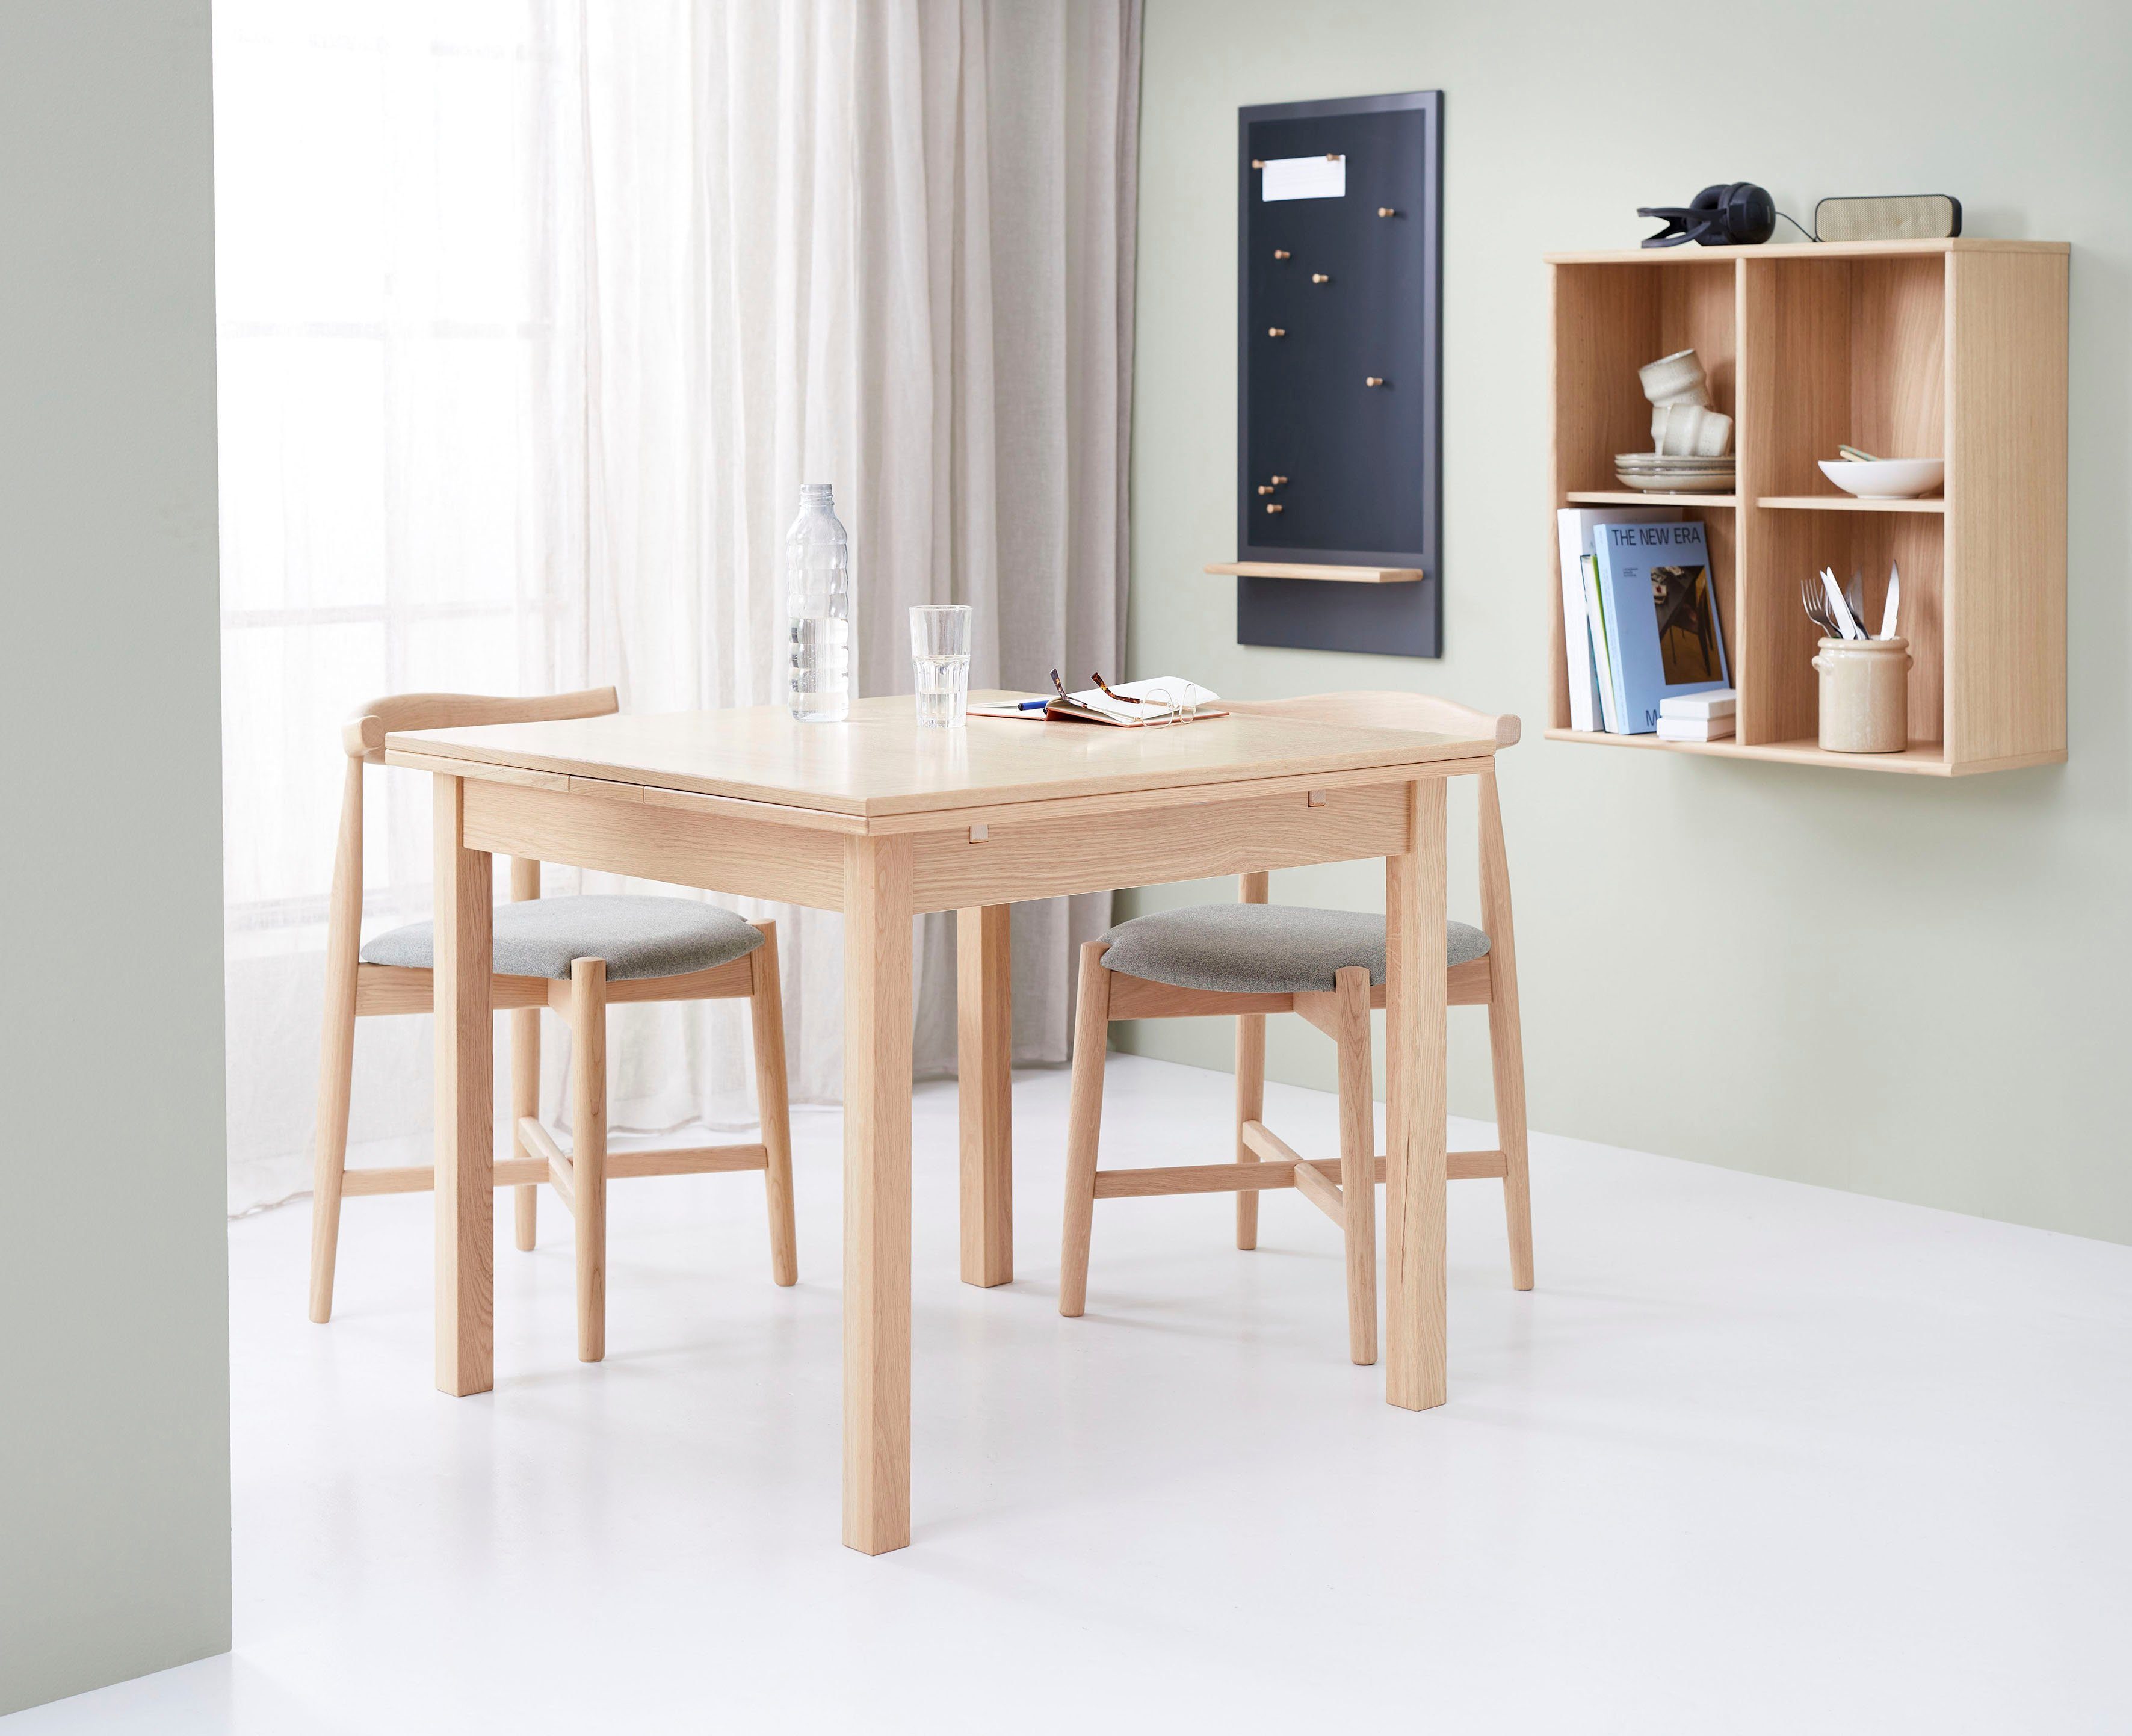 Eiche mit Esstisch Furniture Basic by Auszugsfunktion in Dinex, zwei Hammel Furnier/Massivholz, aus Breiten, Weißpigmentiert Hammel